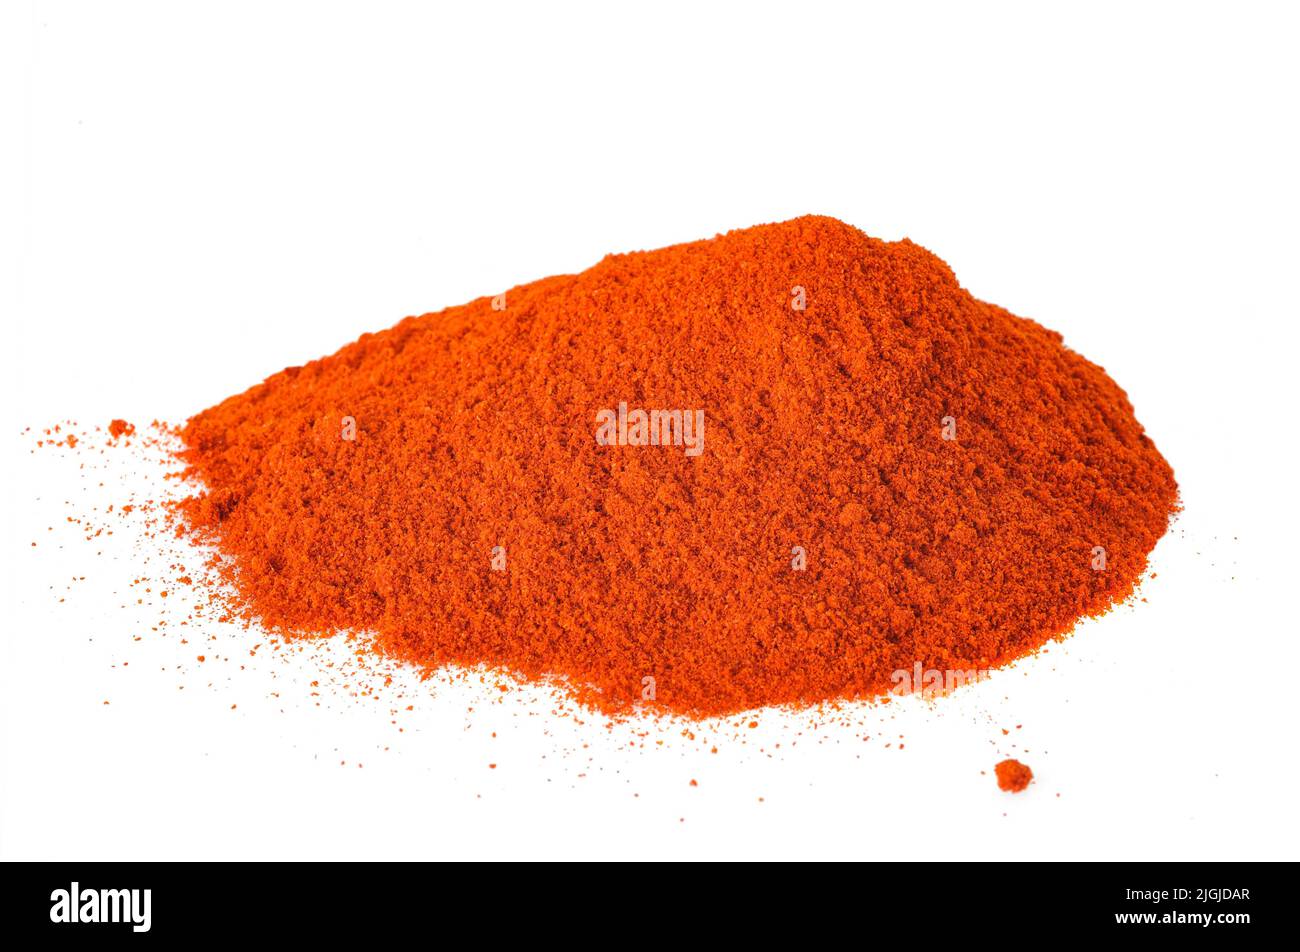 Paprika powder pile isolated on white background Stock Photo